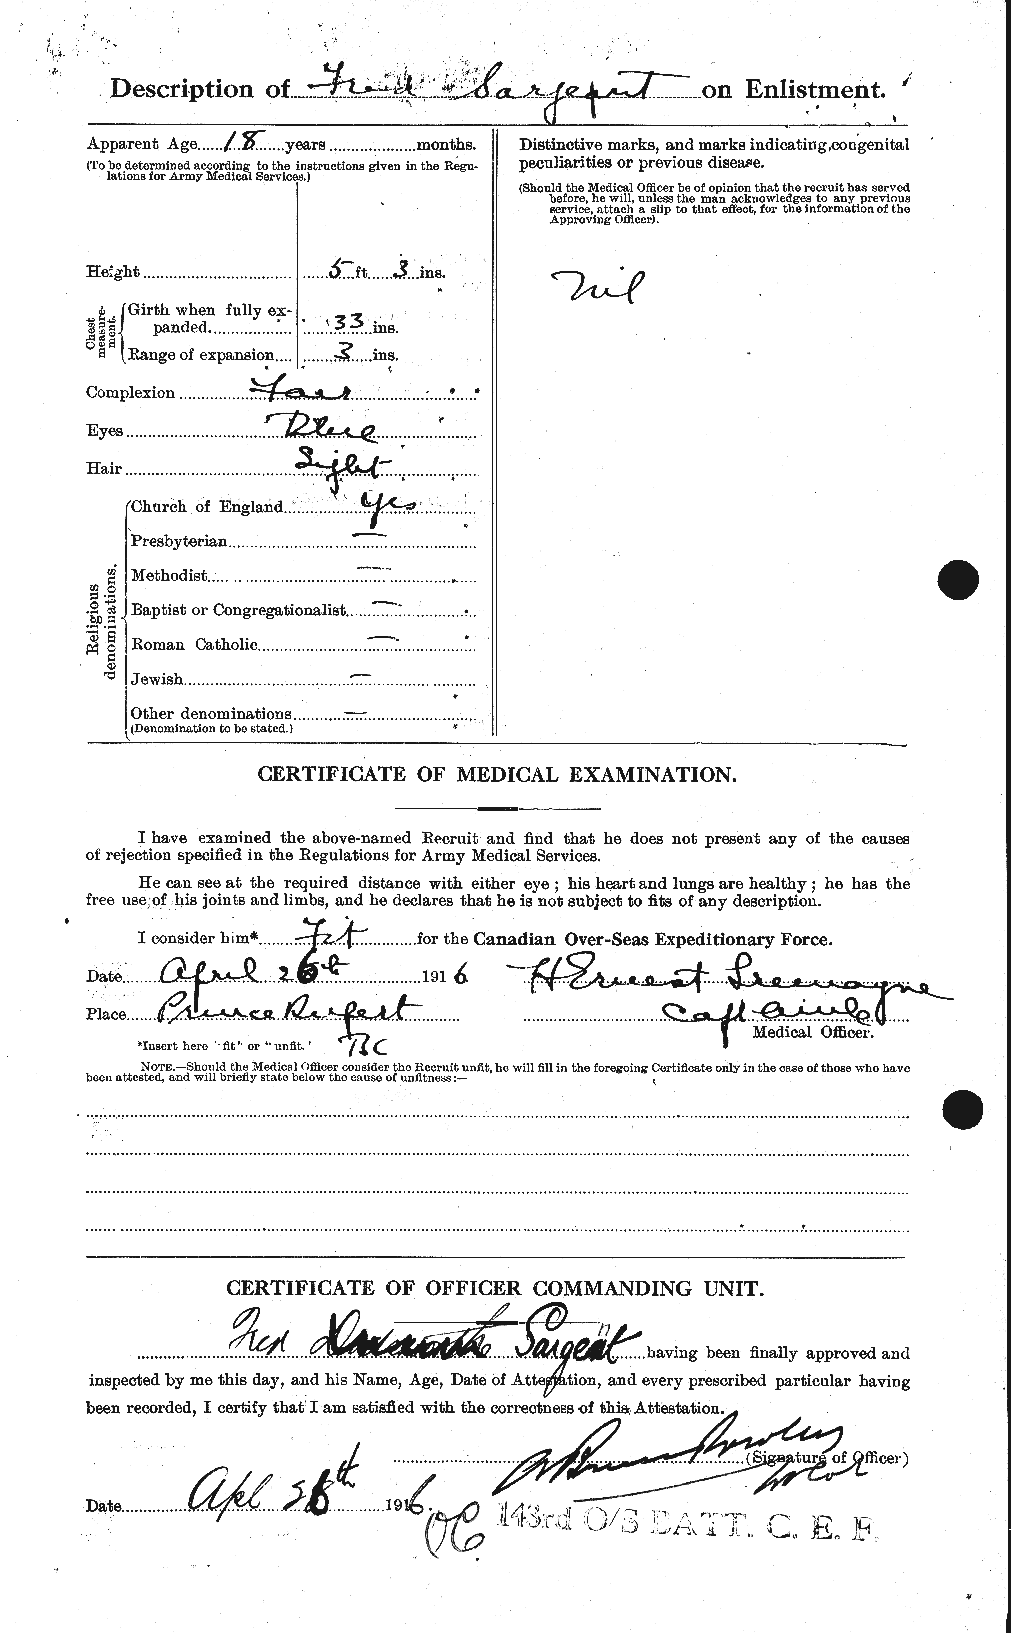 Dossiers du Personnel de la Première Guerre mondiale - CEC 079157b